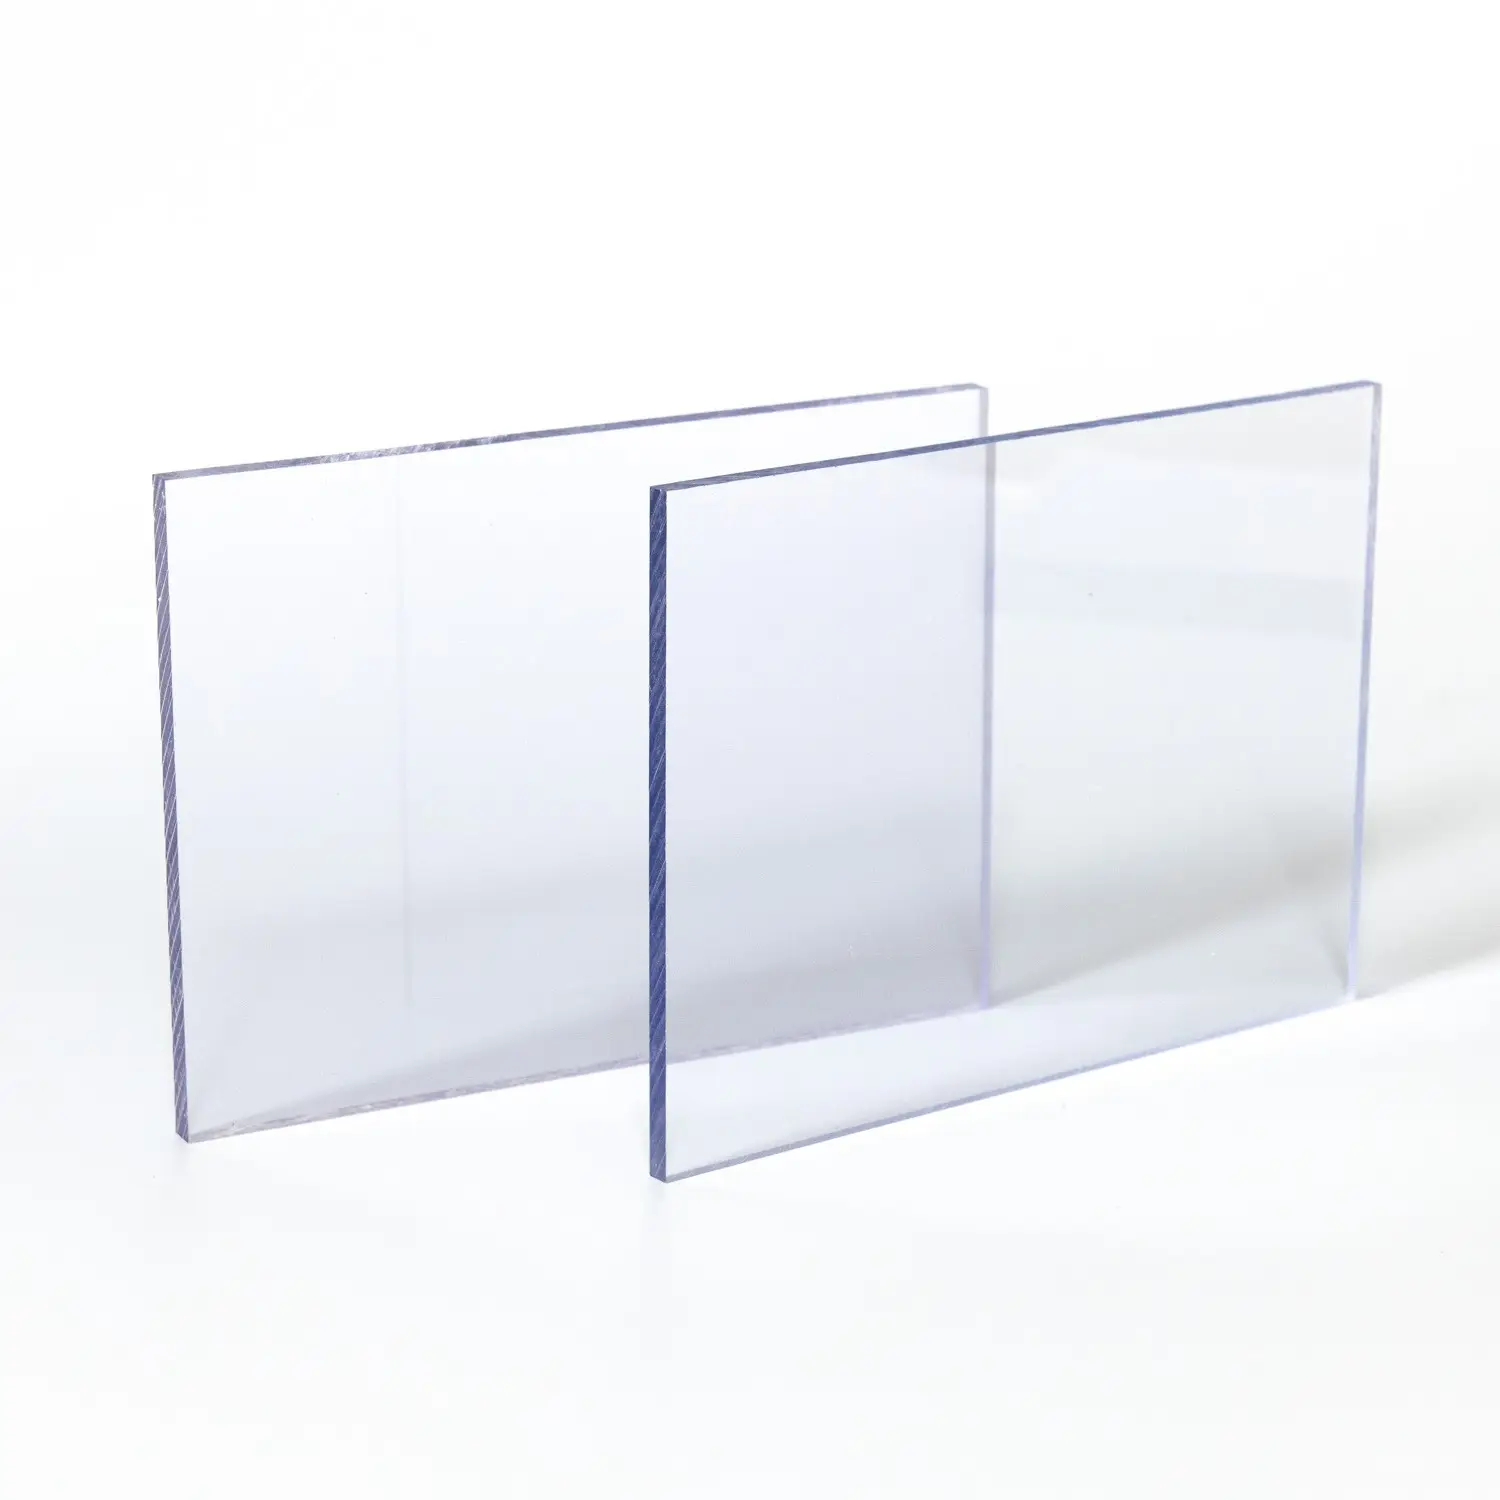 ألواح مضادة للحرارة شفافة من البولي كاربونات للضوء الشفاف في البيوت الزجاجية